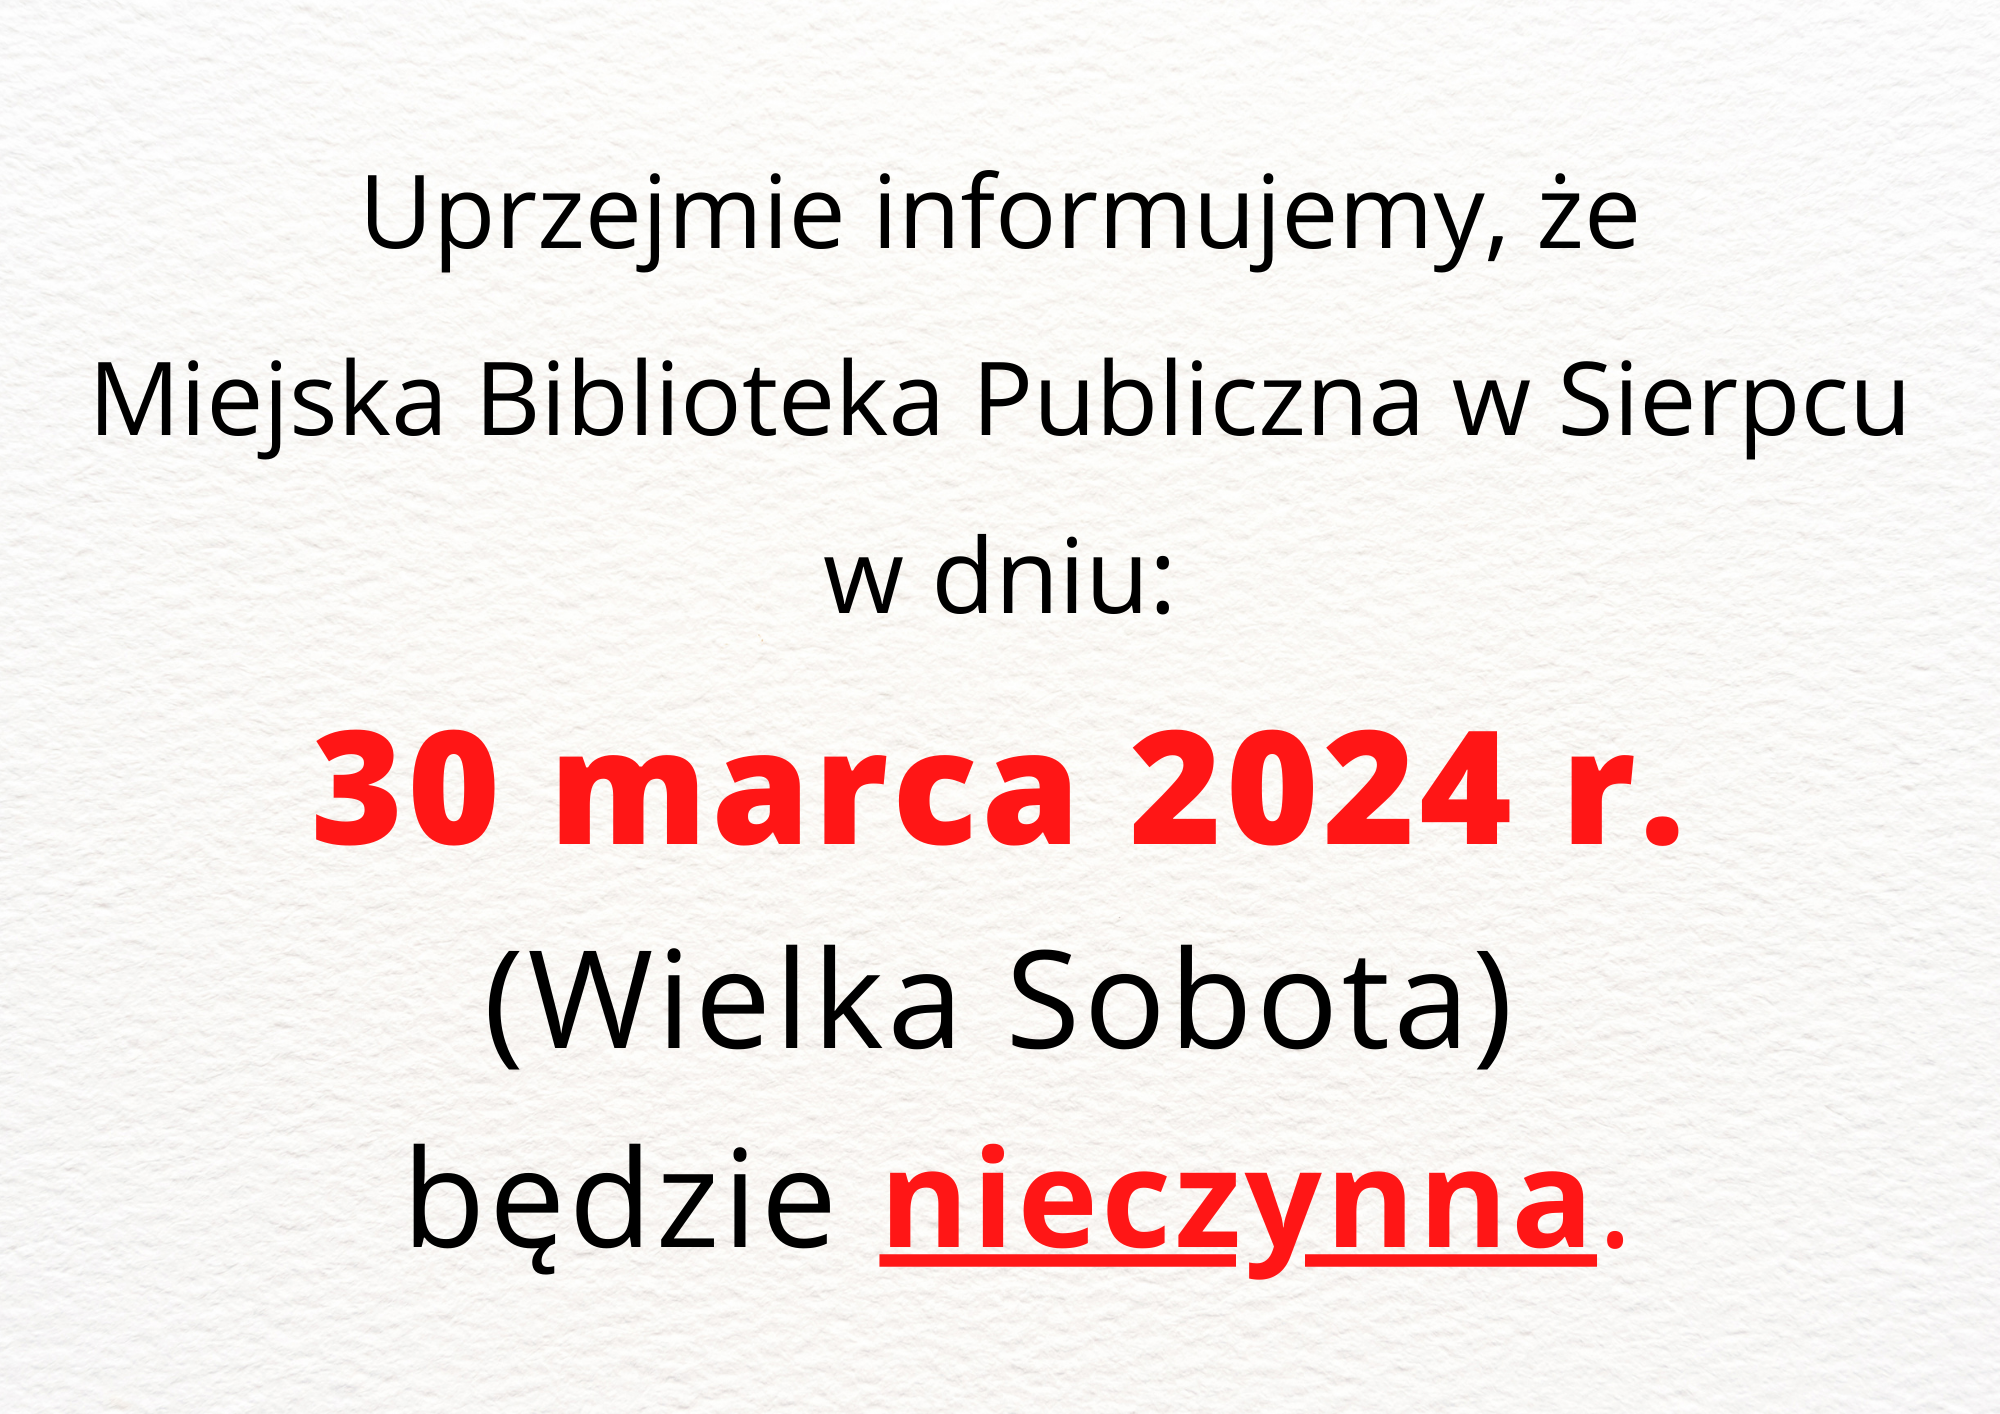 Uprzejmie informujemy, że Miejska Biblioteka Publiczna w Sierpcuw dniu: 30 marca 2024 r.(Wielka Sobota) będzie nieczynna.